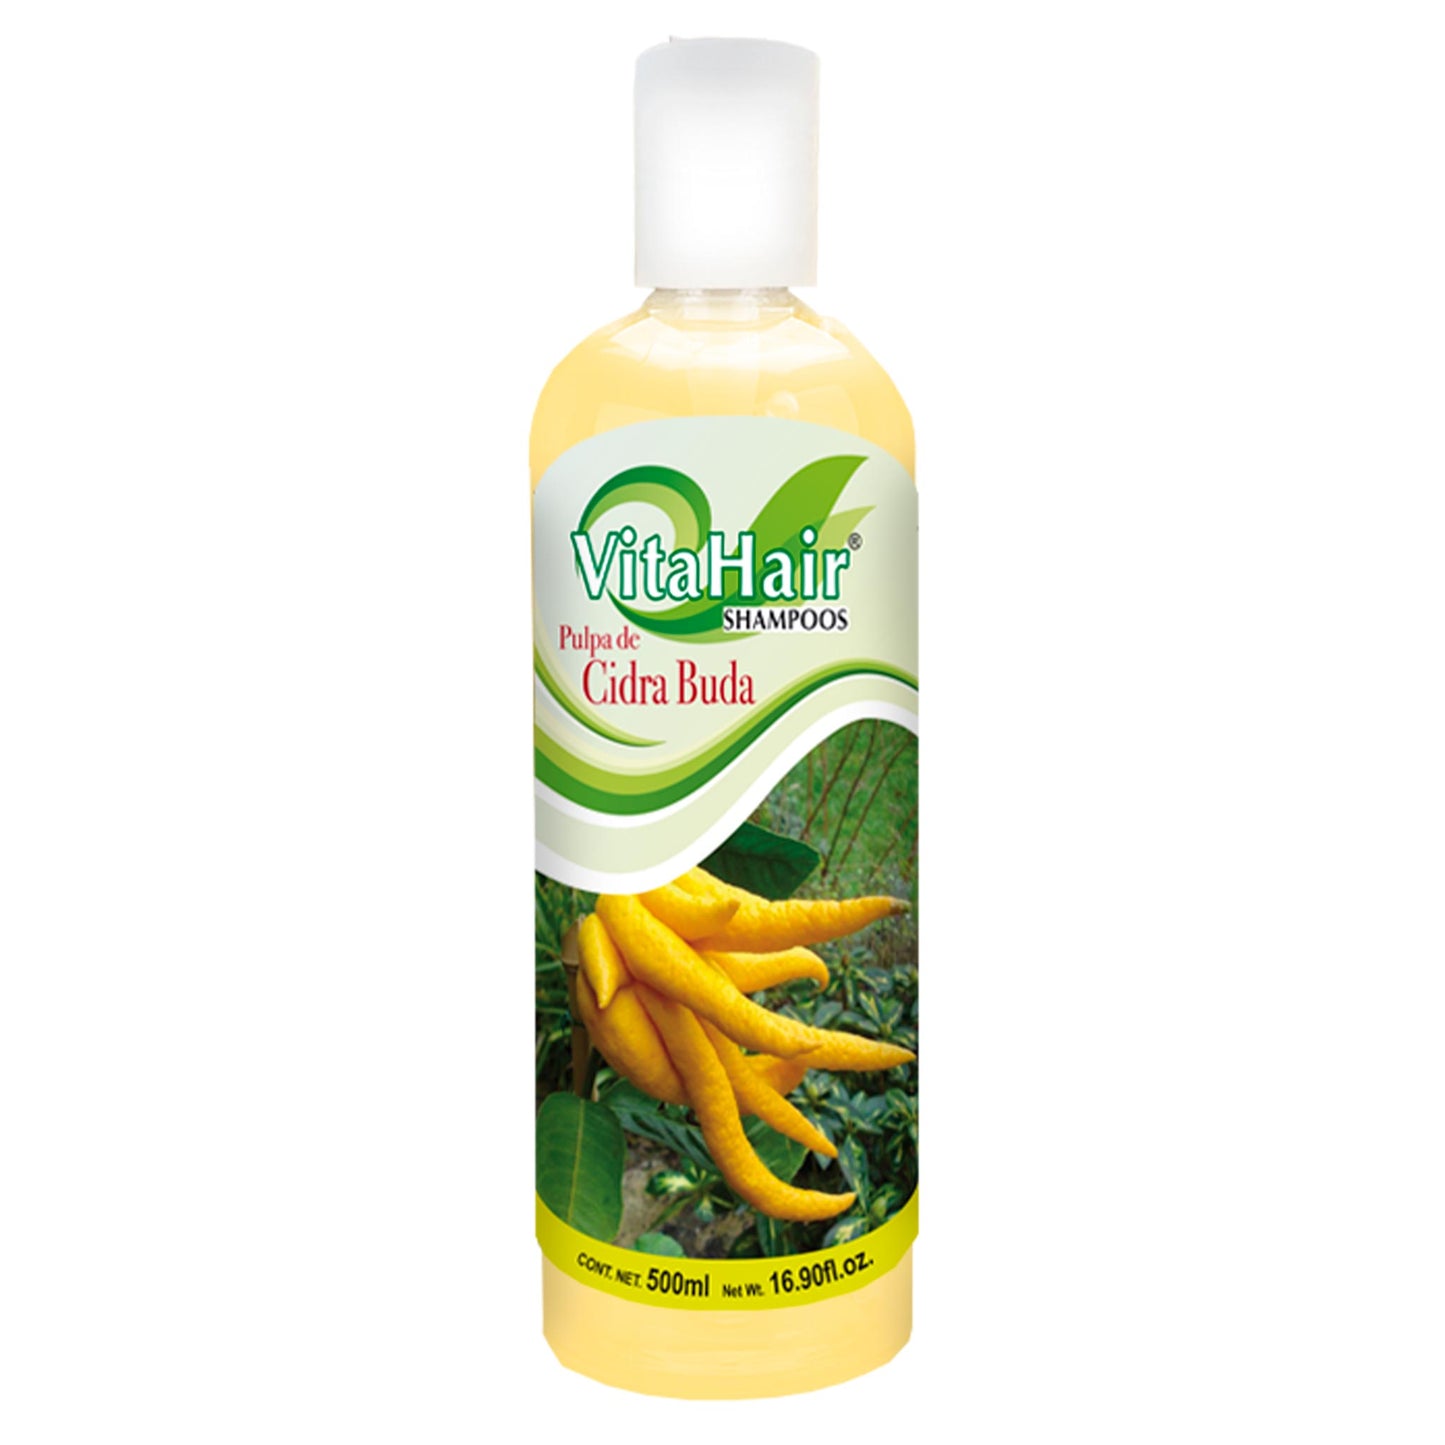 VITAHAIR ® shampoo de cidra de buda 500ml